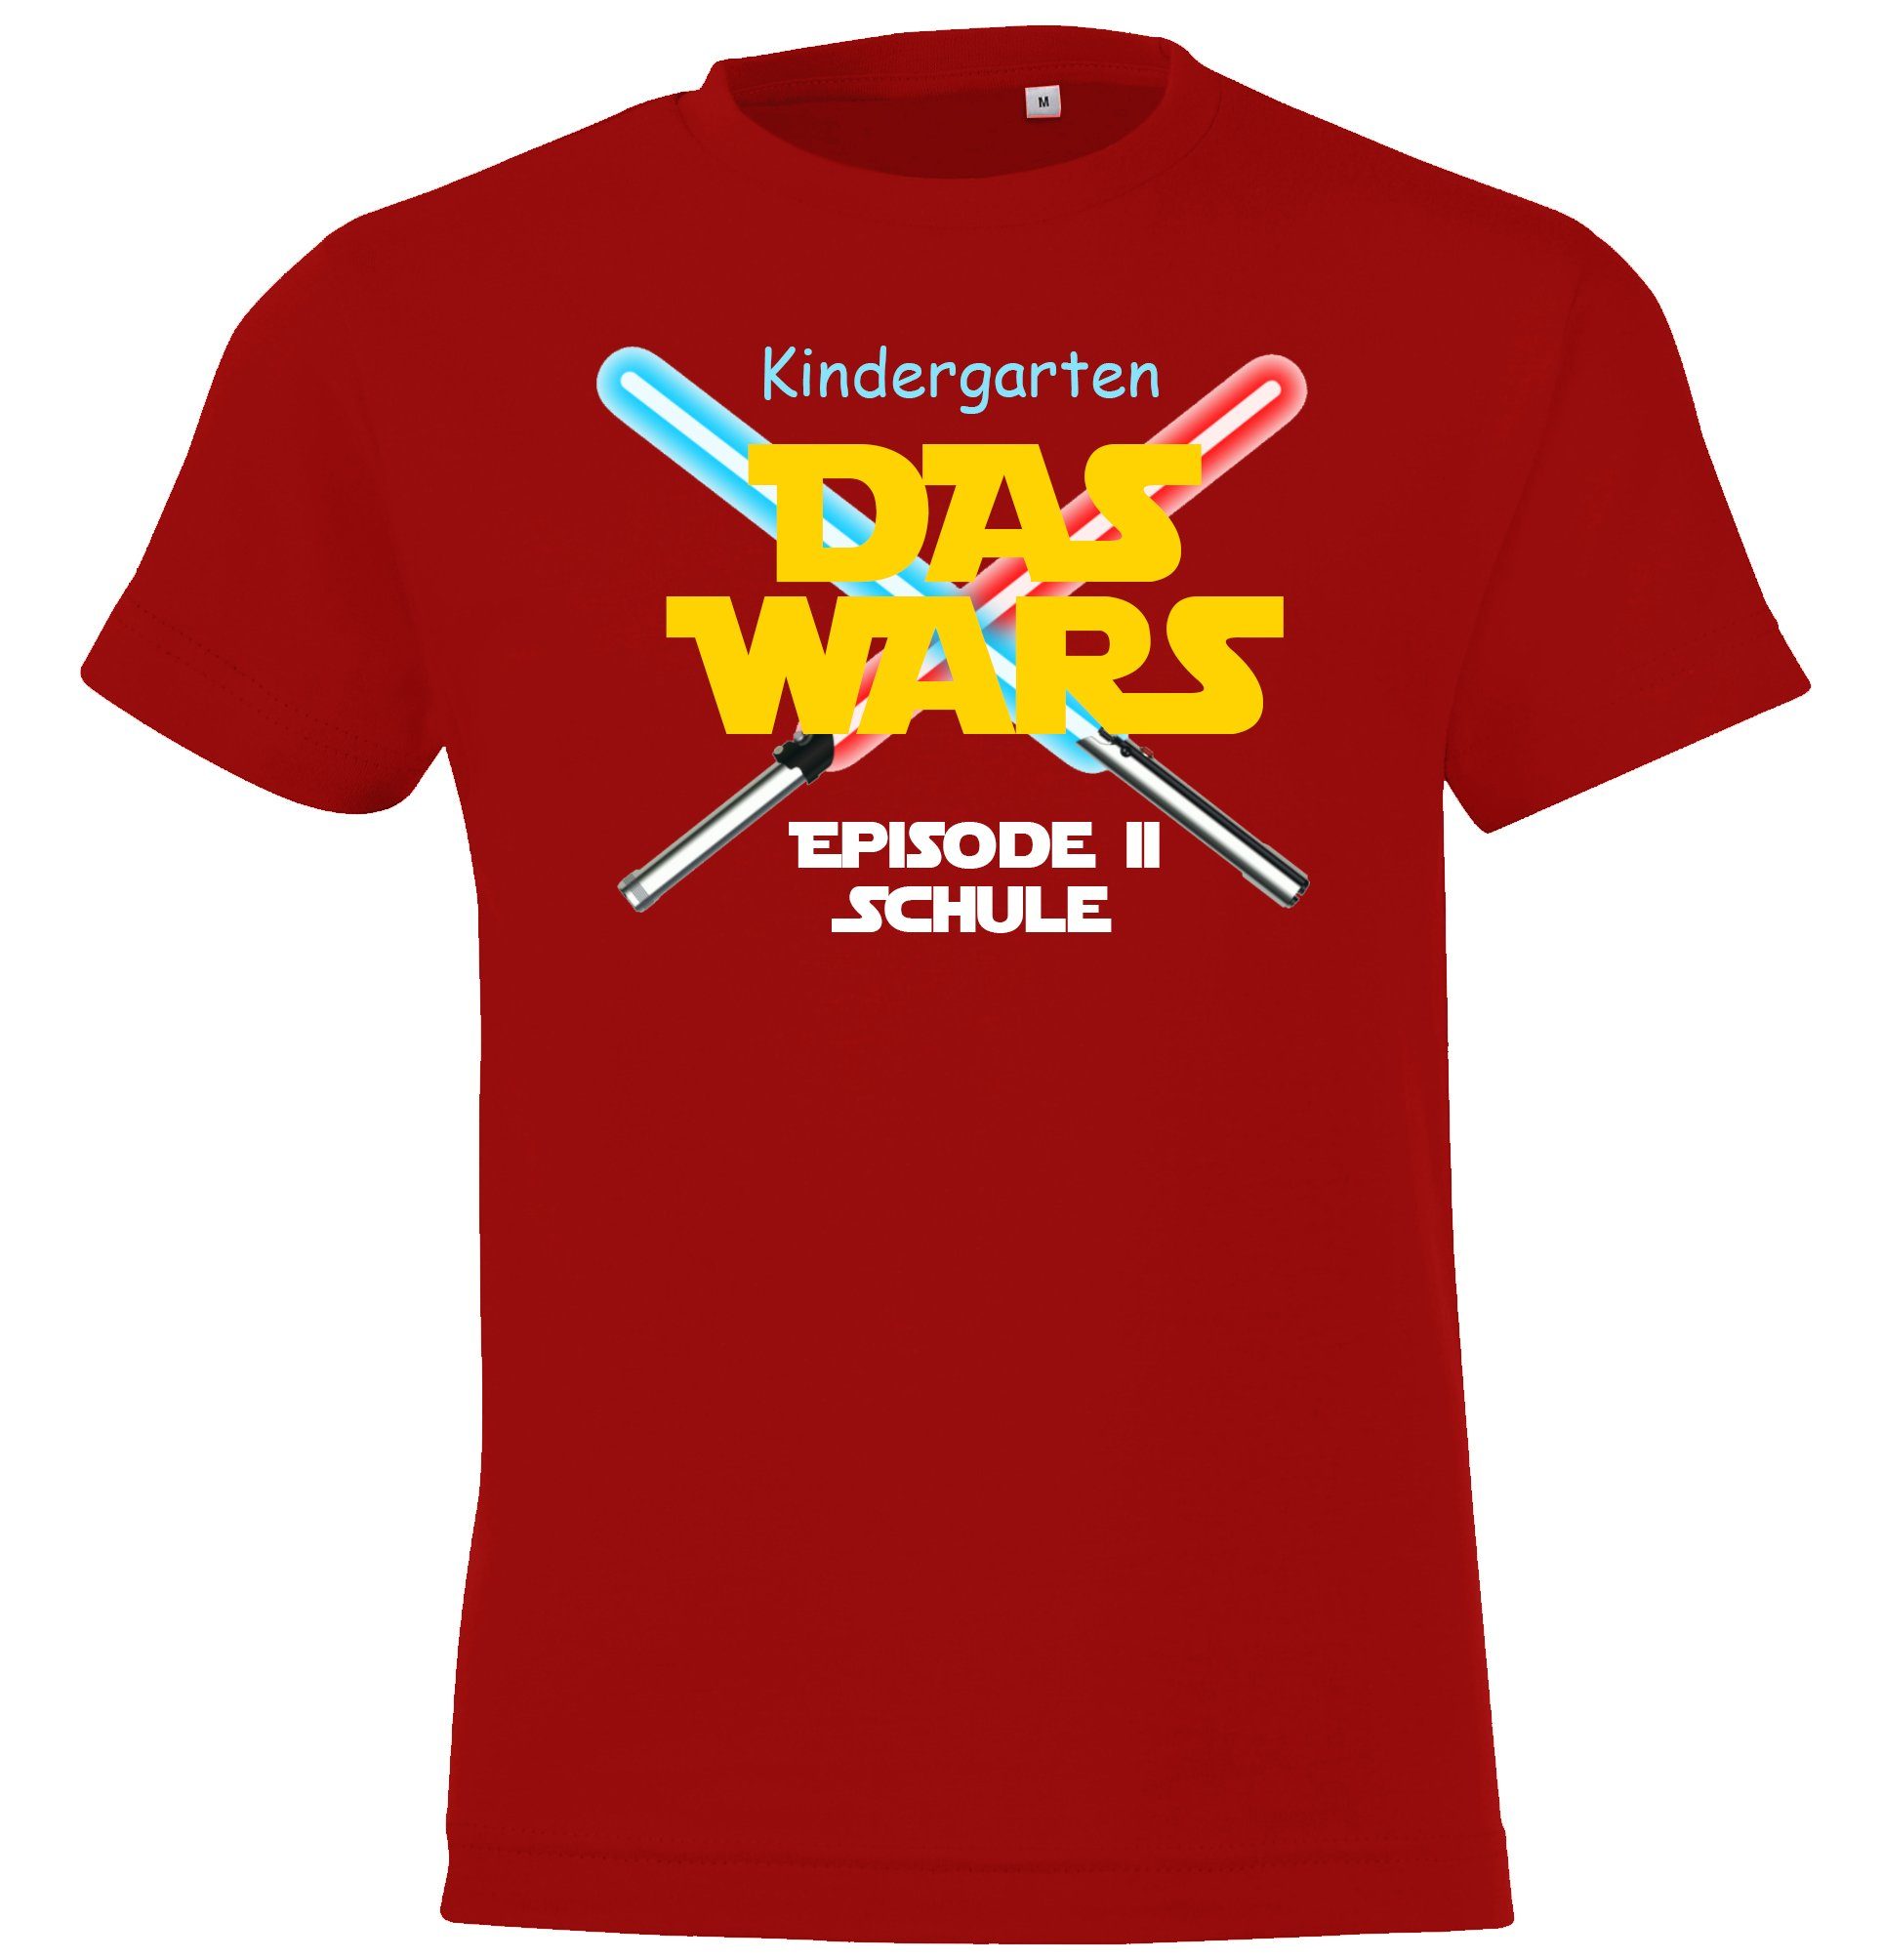 Designz mit Das Shirt Motiv Kindergarten Youth Kinder Wars Einschulungs T-Shirt lustigem Rot